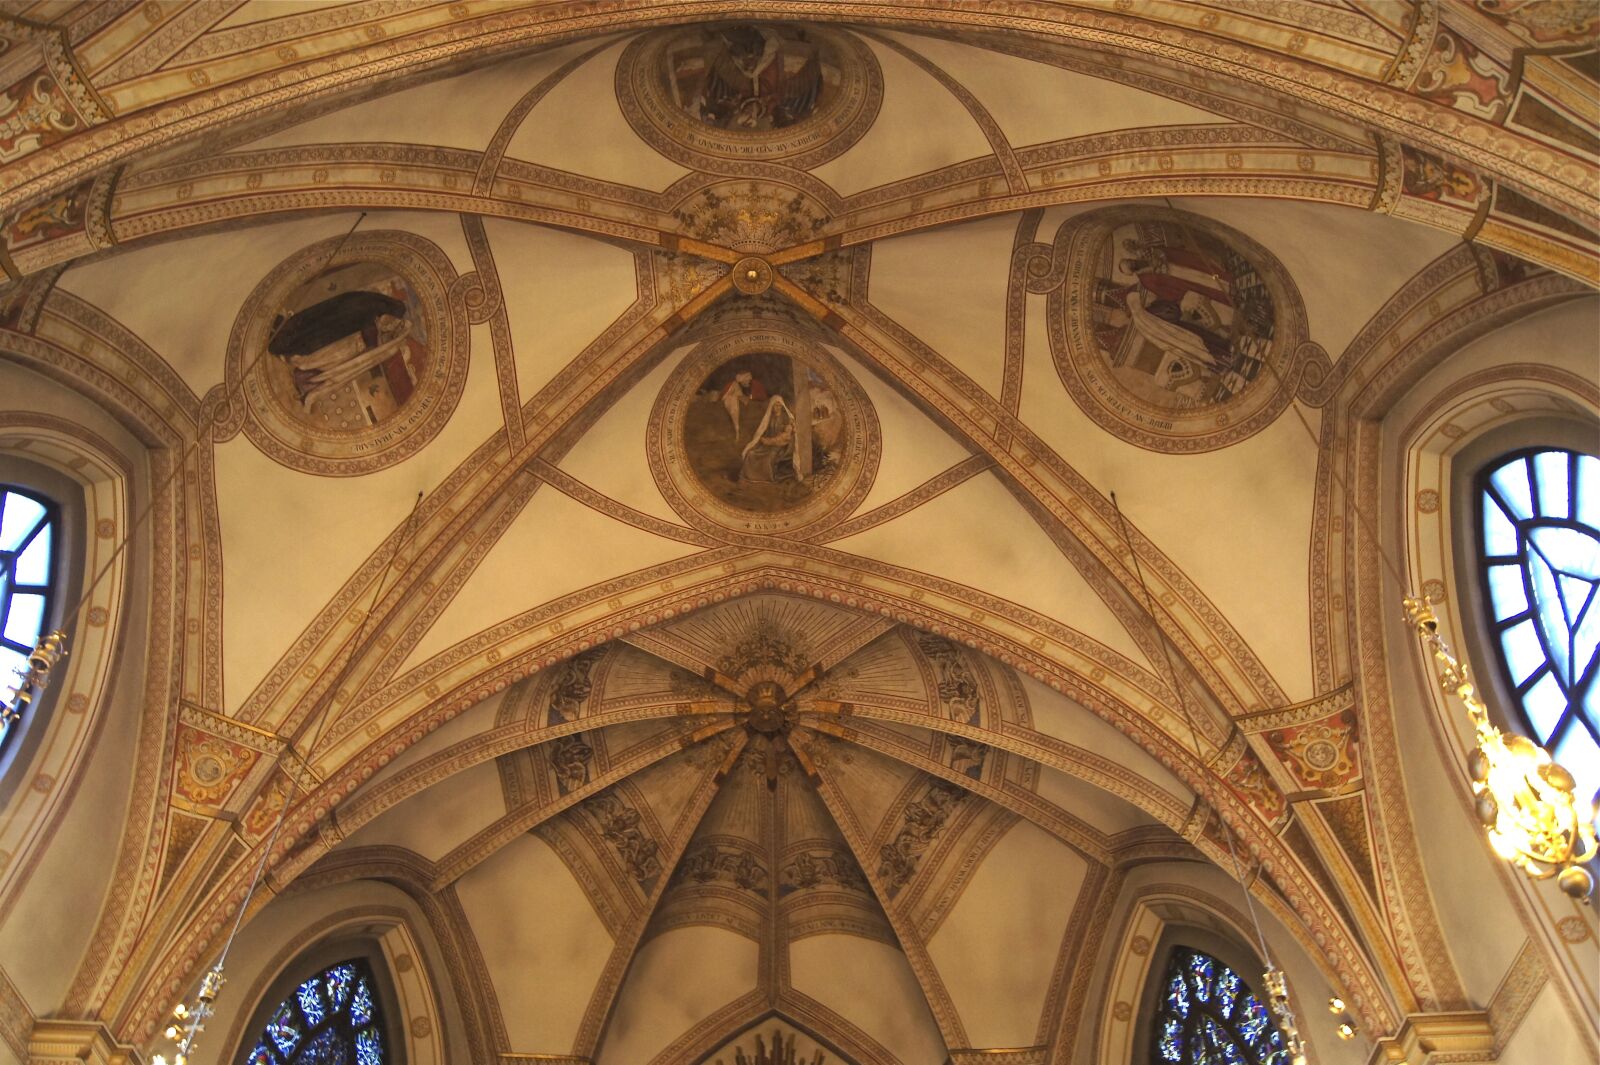 Sony SLT-A33 sample photo. Church, ceiling, ornament photography